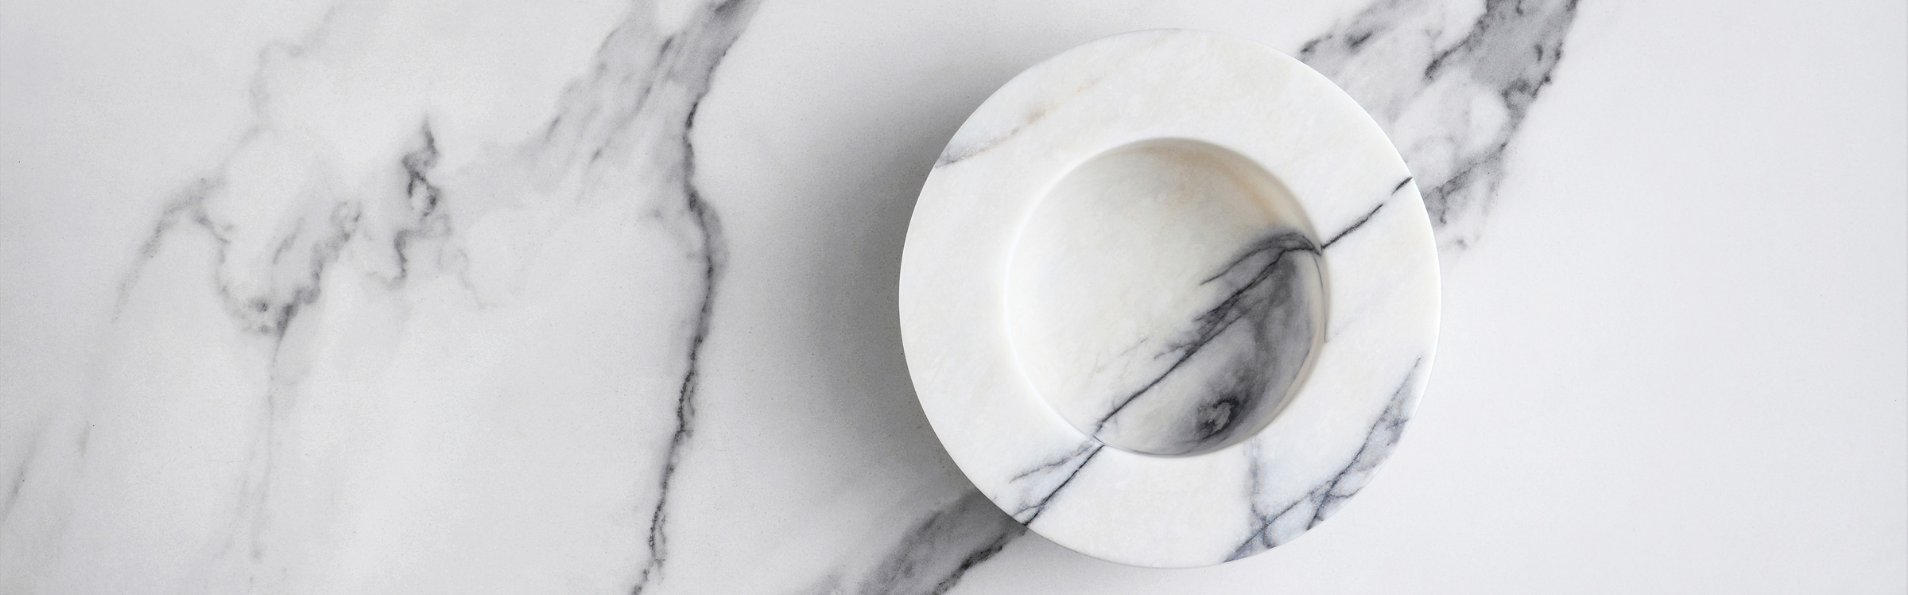 Assiette effet marbre sur table en marbre